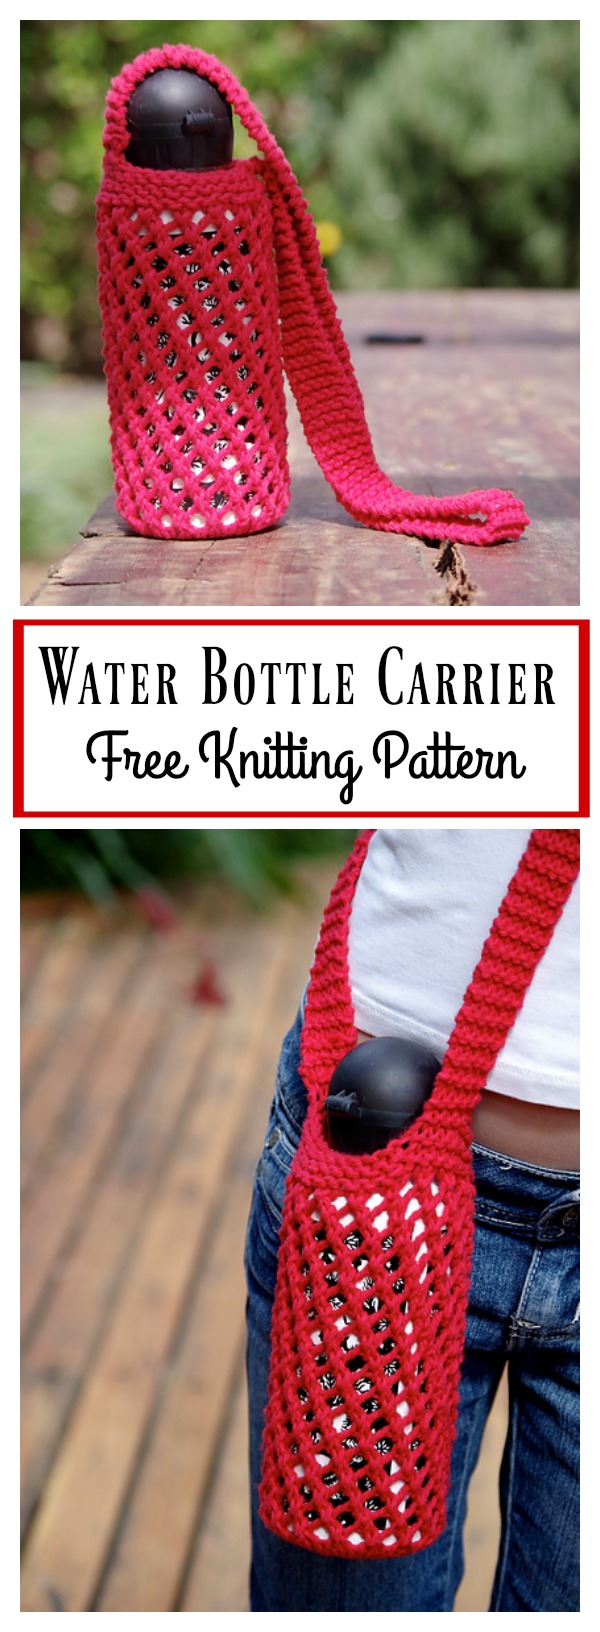 Water Bottle Carrier Free Knitting Pattern 